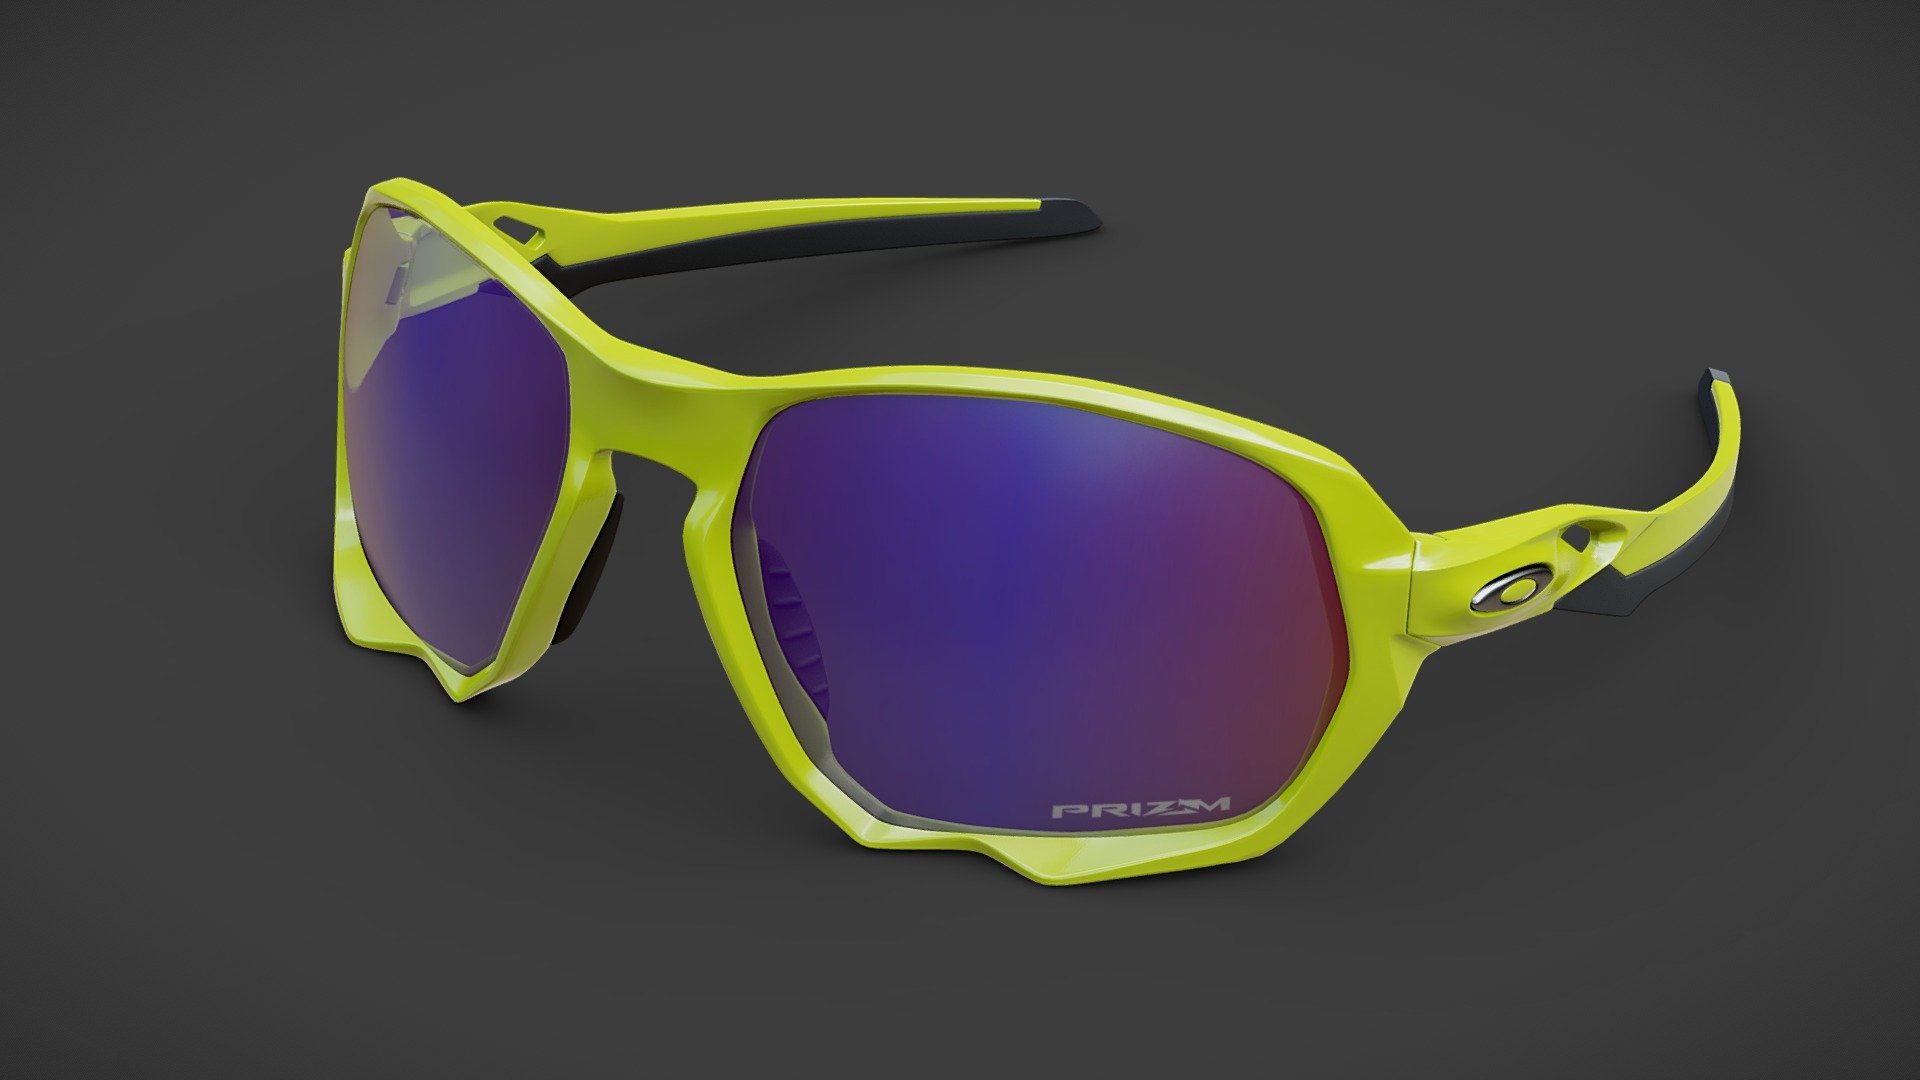 Oakley Plasma sunglasses highpoly model 4K PBR textures set - Oakley Plasma sunglasses - Buy Royalty Free 3D model by Eugene Korolev (@eugene.korolev) 3d model